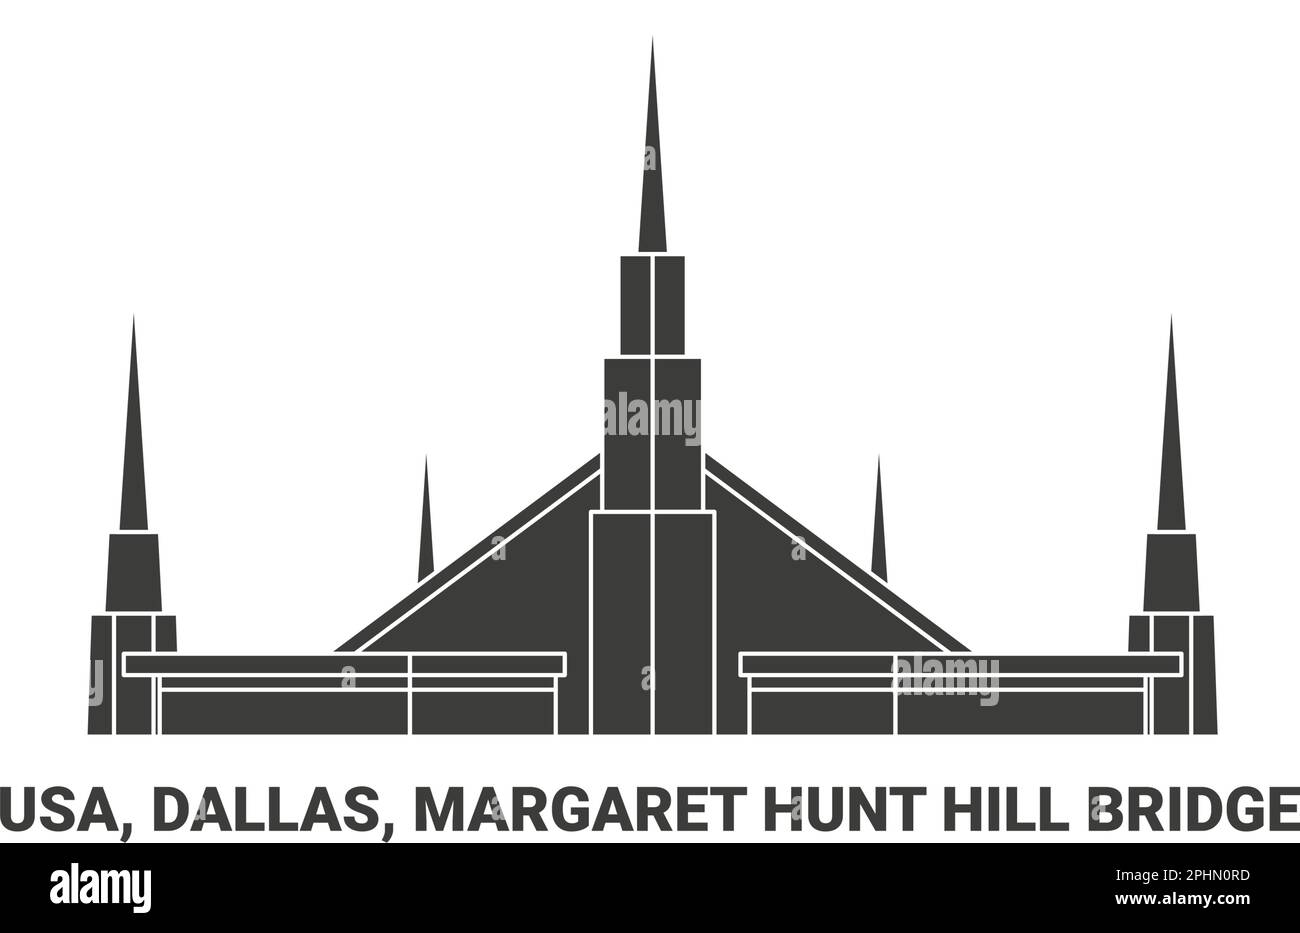 Usa, Dallas, Margaret Hunt Hill Bridge, travel landmark vector illustration Stock Vector